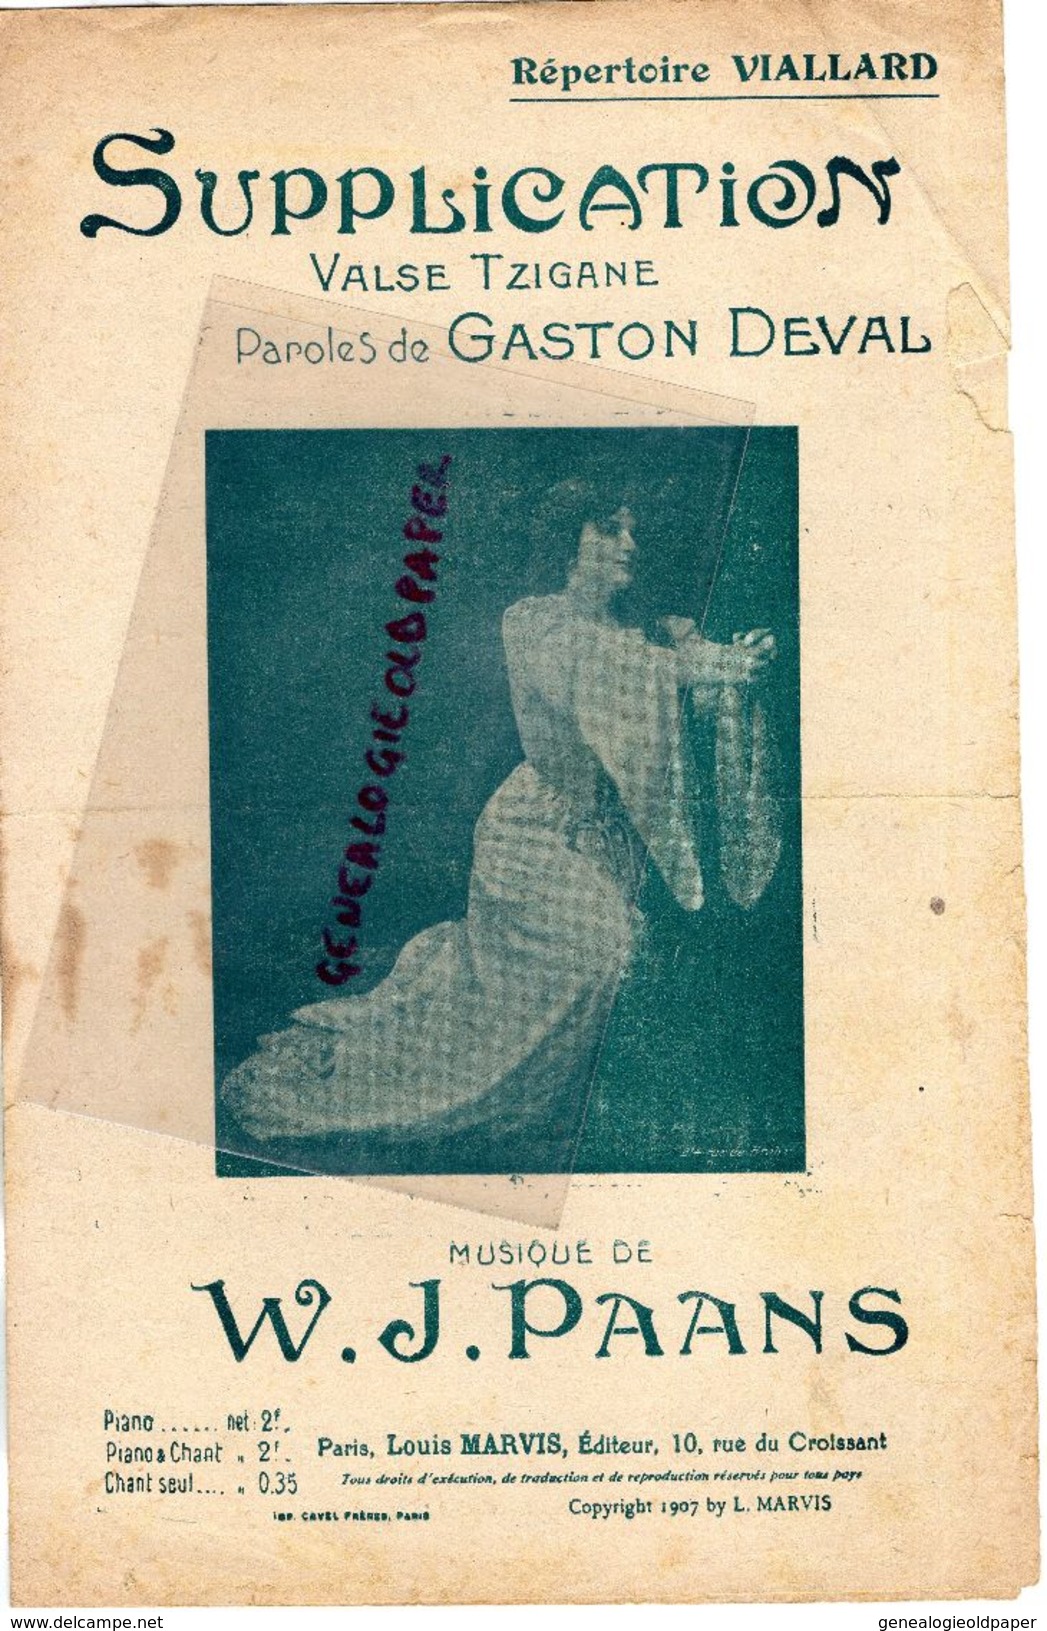 PARTITION MUSIQUE- SUPPLICATION-VALSE TZIGANE-GASTON DEVAL*VIALLARD- W.J. PAANS-EDITEUR LOUIS MARVIS PARIS-1907 - Scores & Partitions